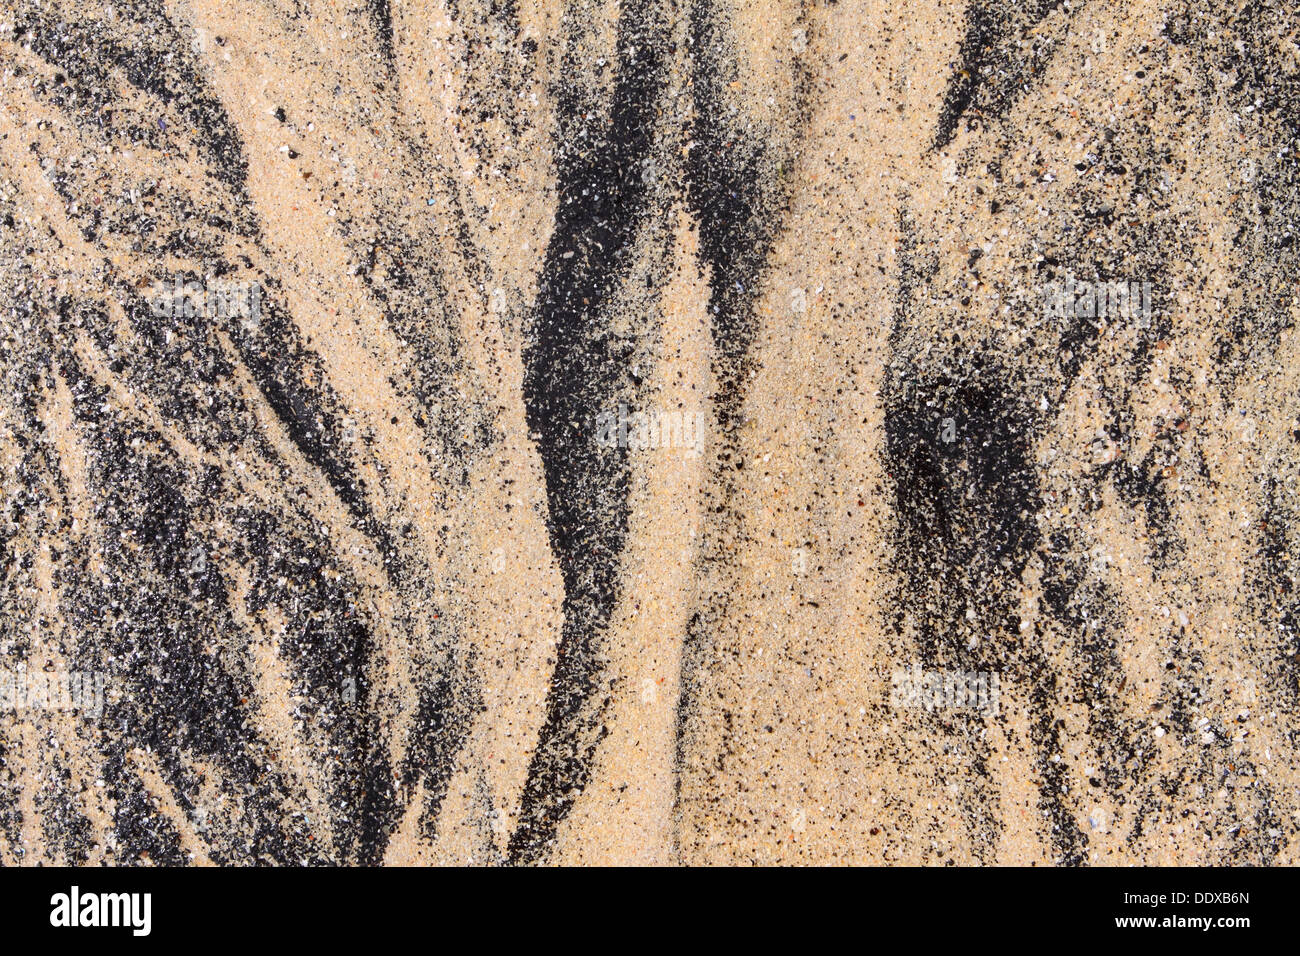 Plage de sable noir avec des particules de coquille de moule Cornwall UK Banque D'Images